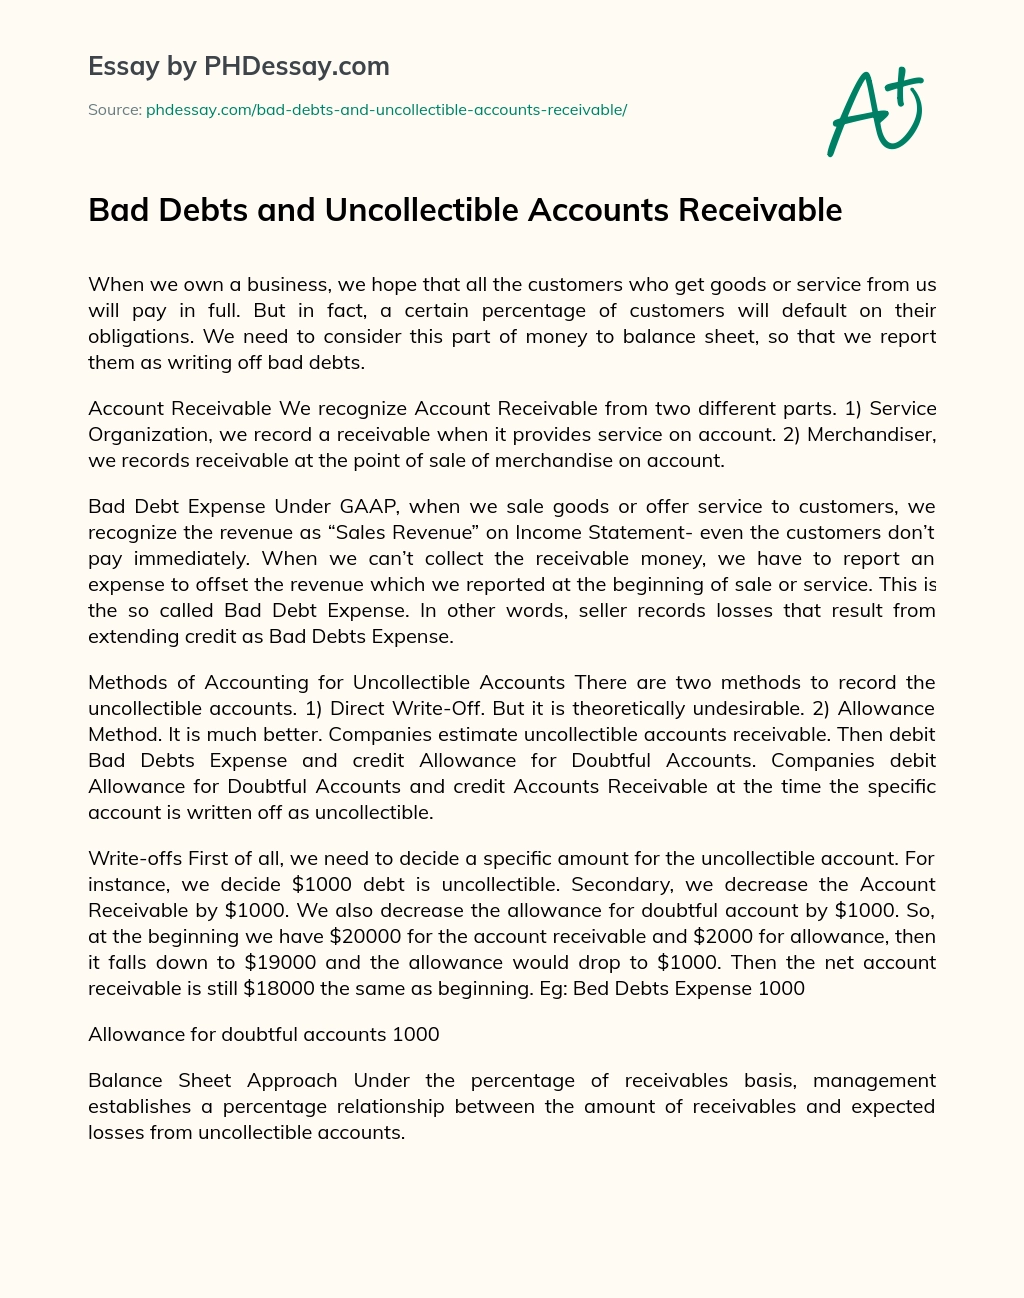 Bad Debts and Uncollectible Accounts Receivable essay